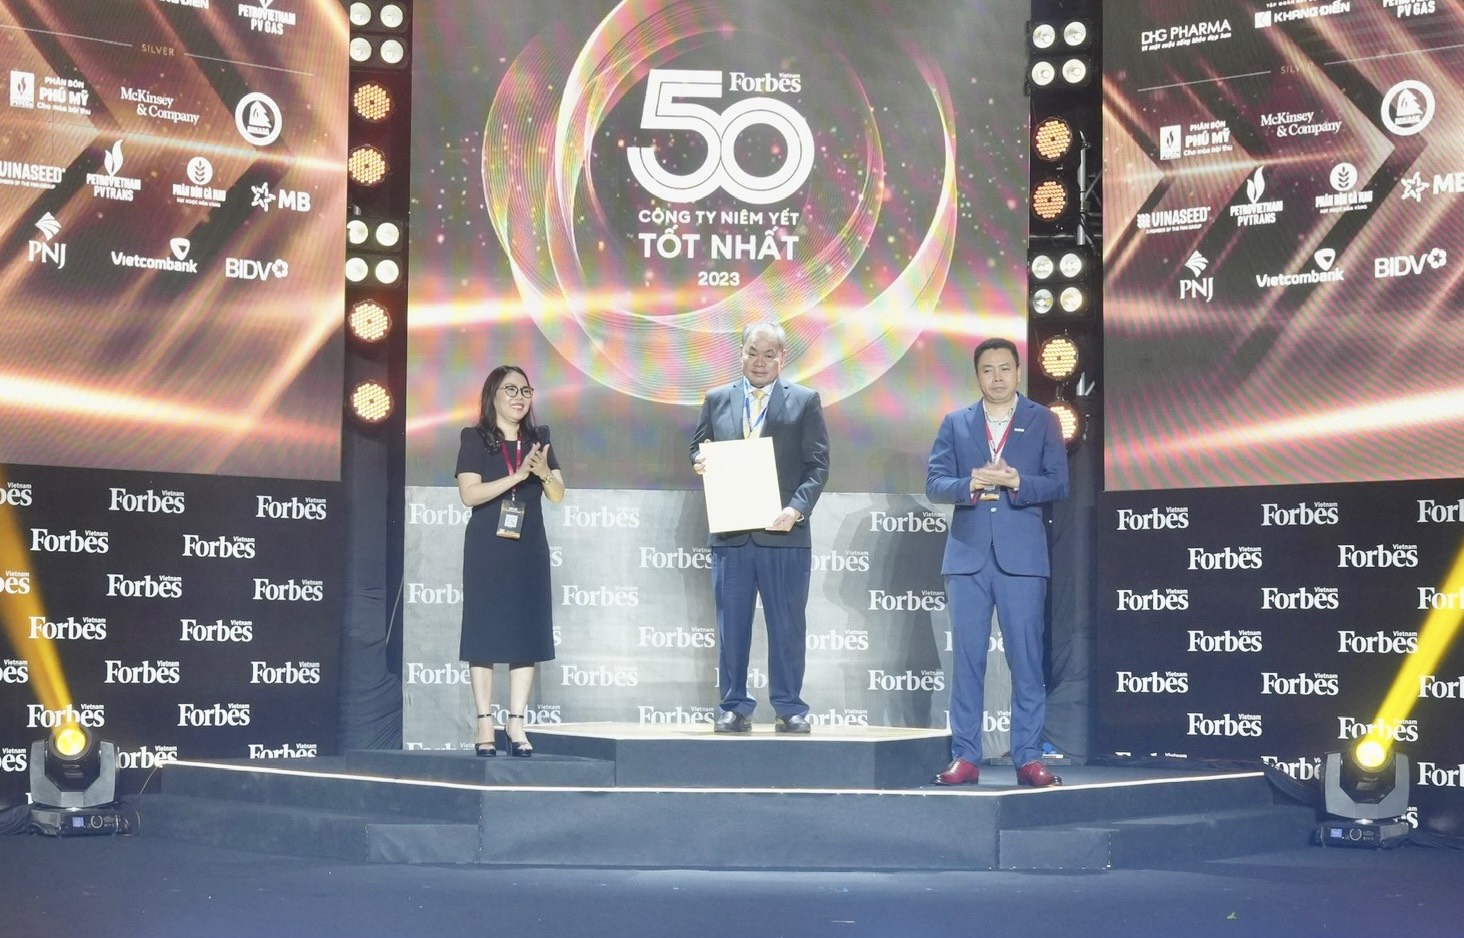 Ông Quảng Văn Viết Cương – Phó Tổng Giám đốc Tổng công ty Becamex IDC nhận cúp và chứng nhận TOP 50 công ty niêm yết tốt nhất Việt Nam năm 2023